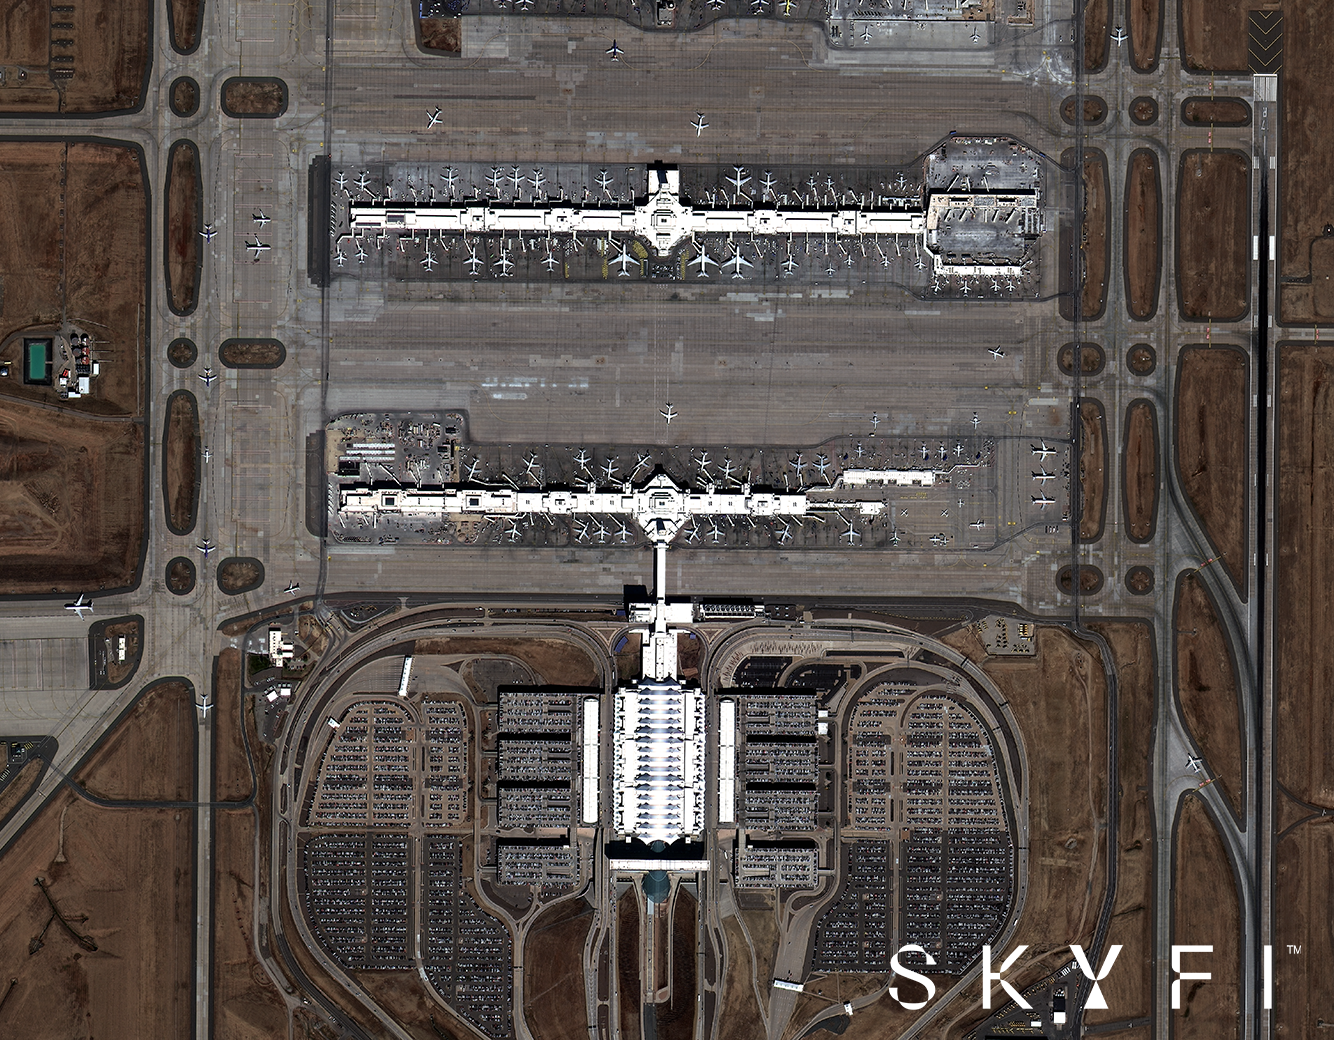 Optical, 50 cm: Denver International Airport